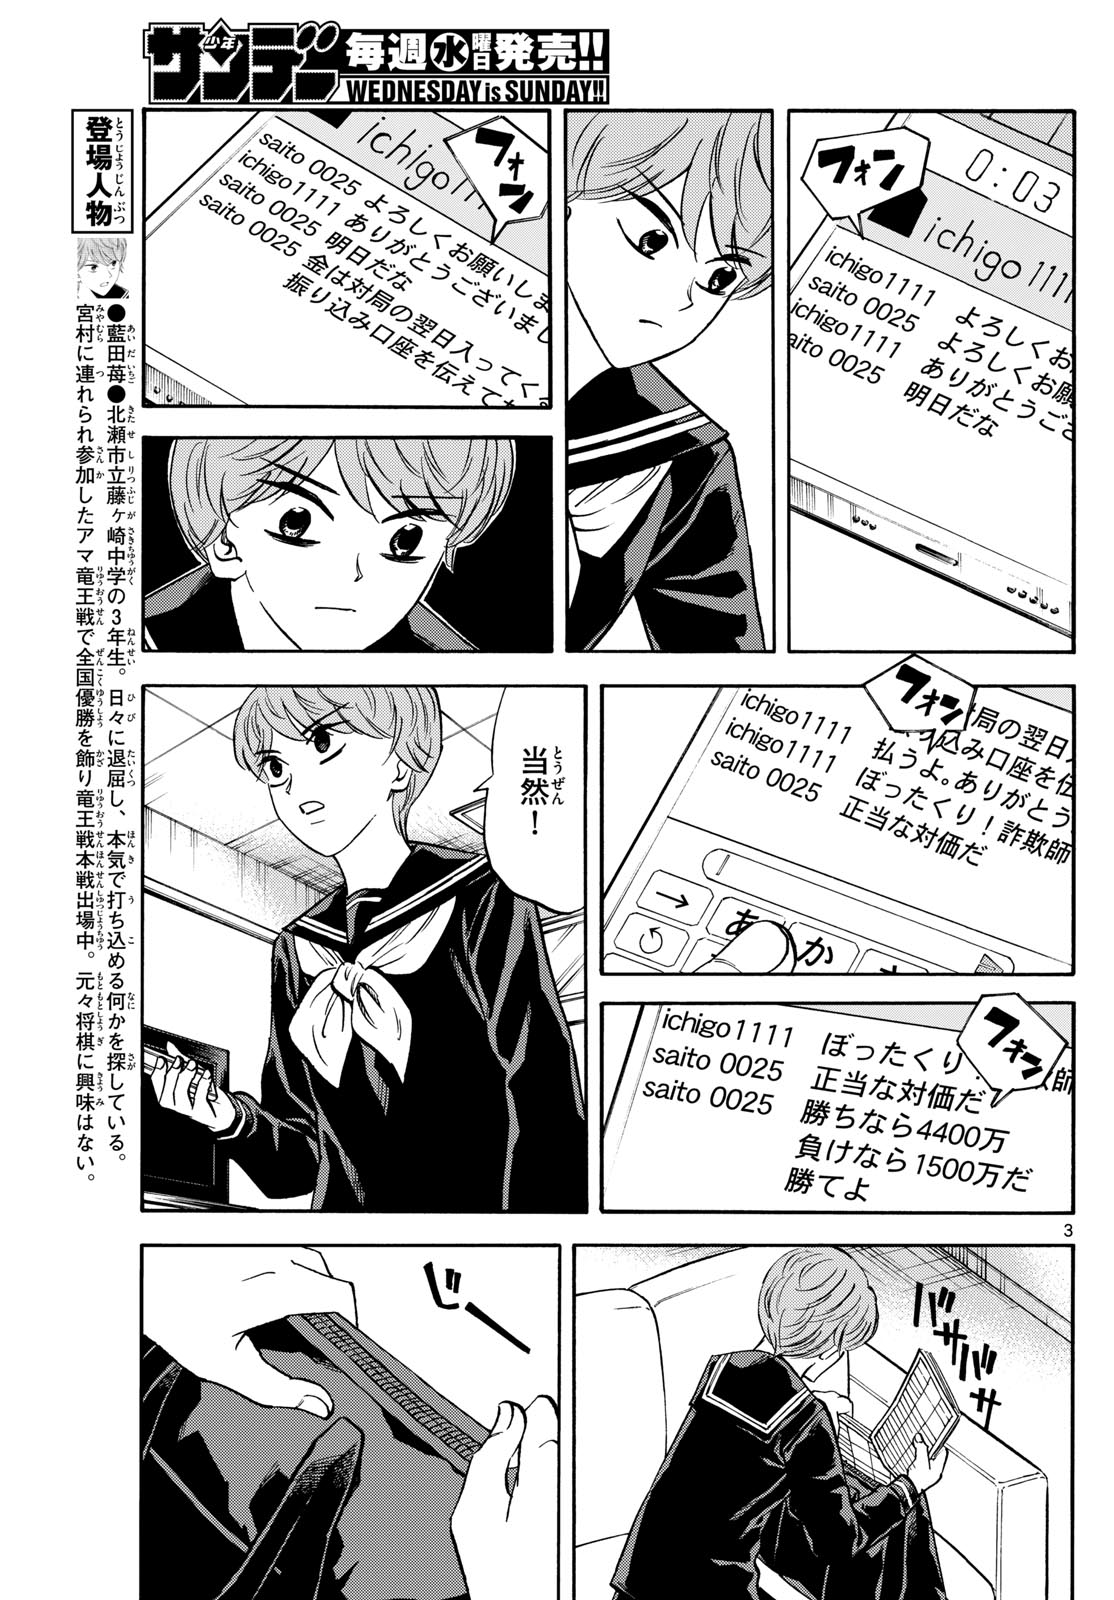 Tatsu to Ichigo - Chapter 174 - Page 3